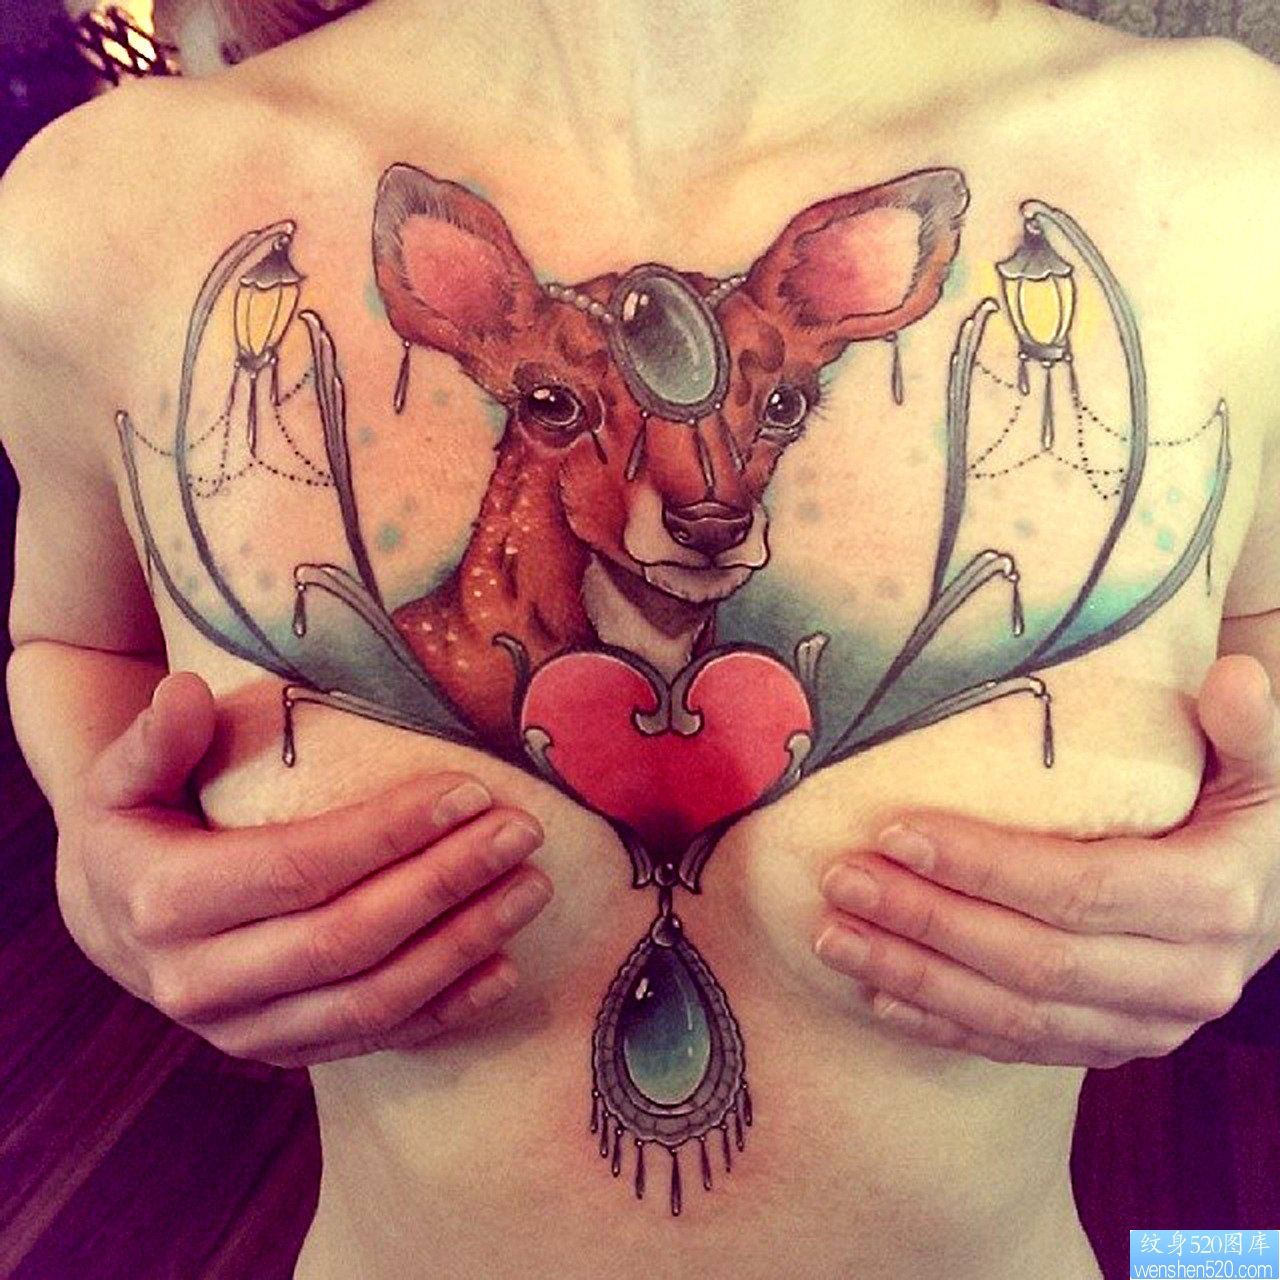 展示一幅个性潮流的胸部鹿纹身图片